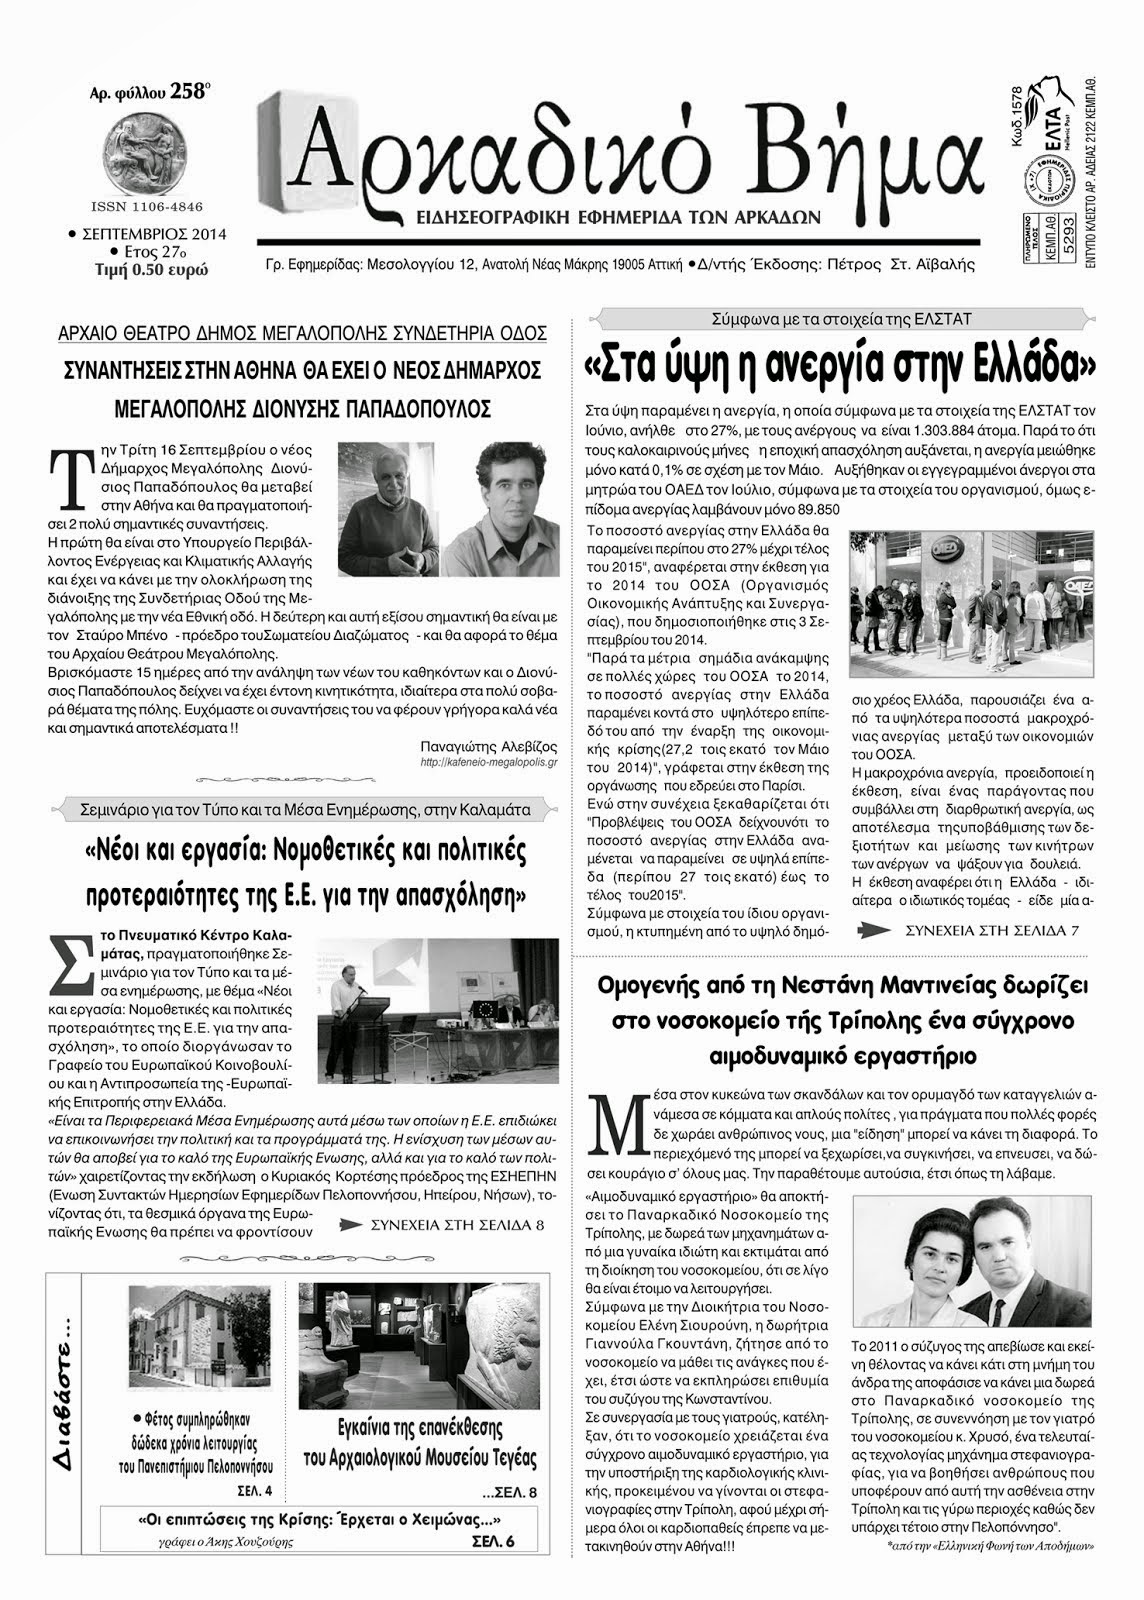 Αρκαδικό Βήμα - Κυκλοφόρησε το νέο φύλλο της εφημερίδας